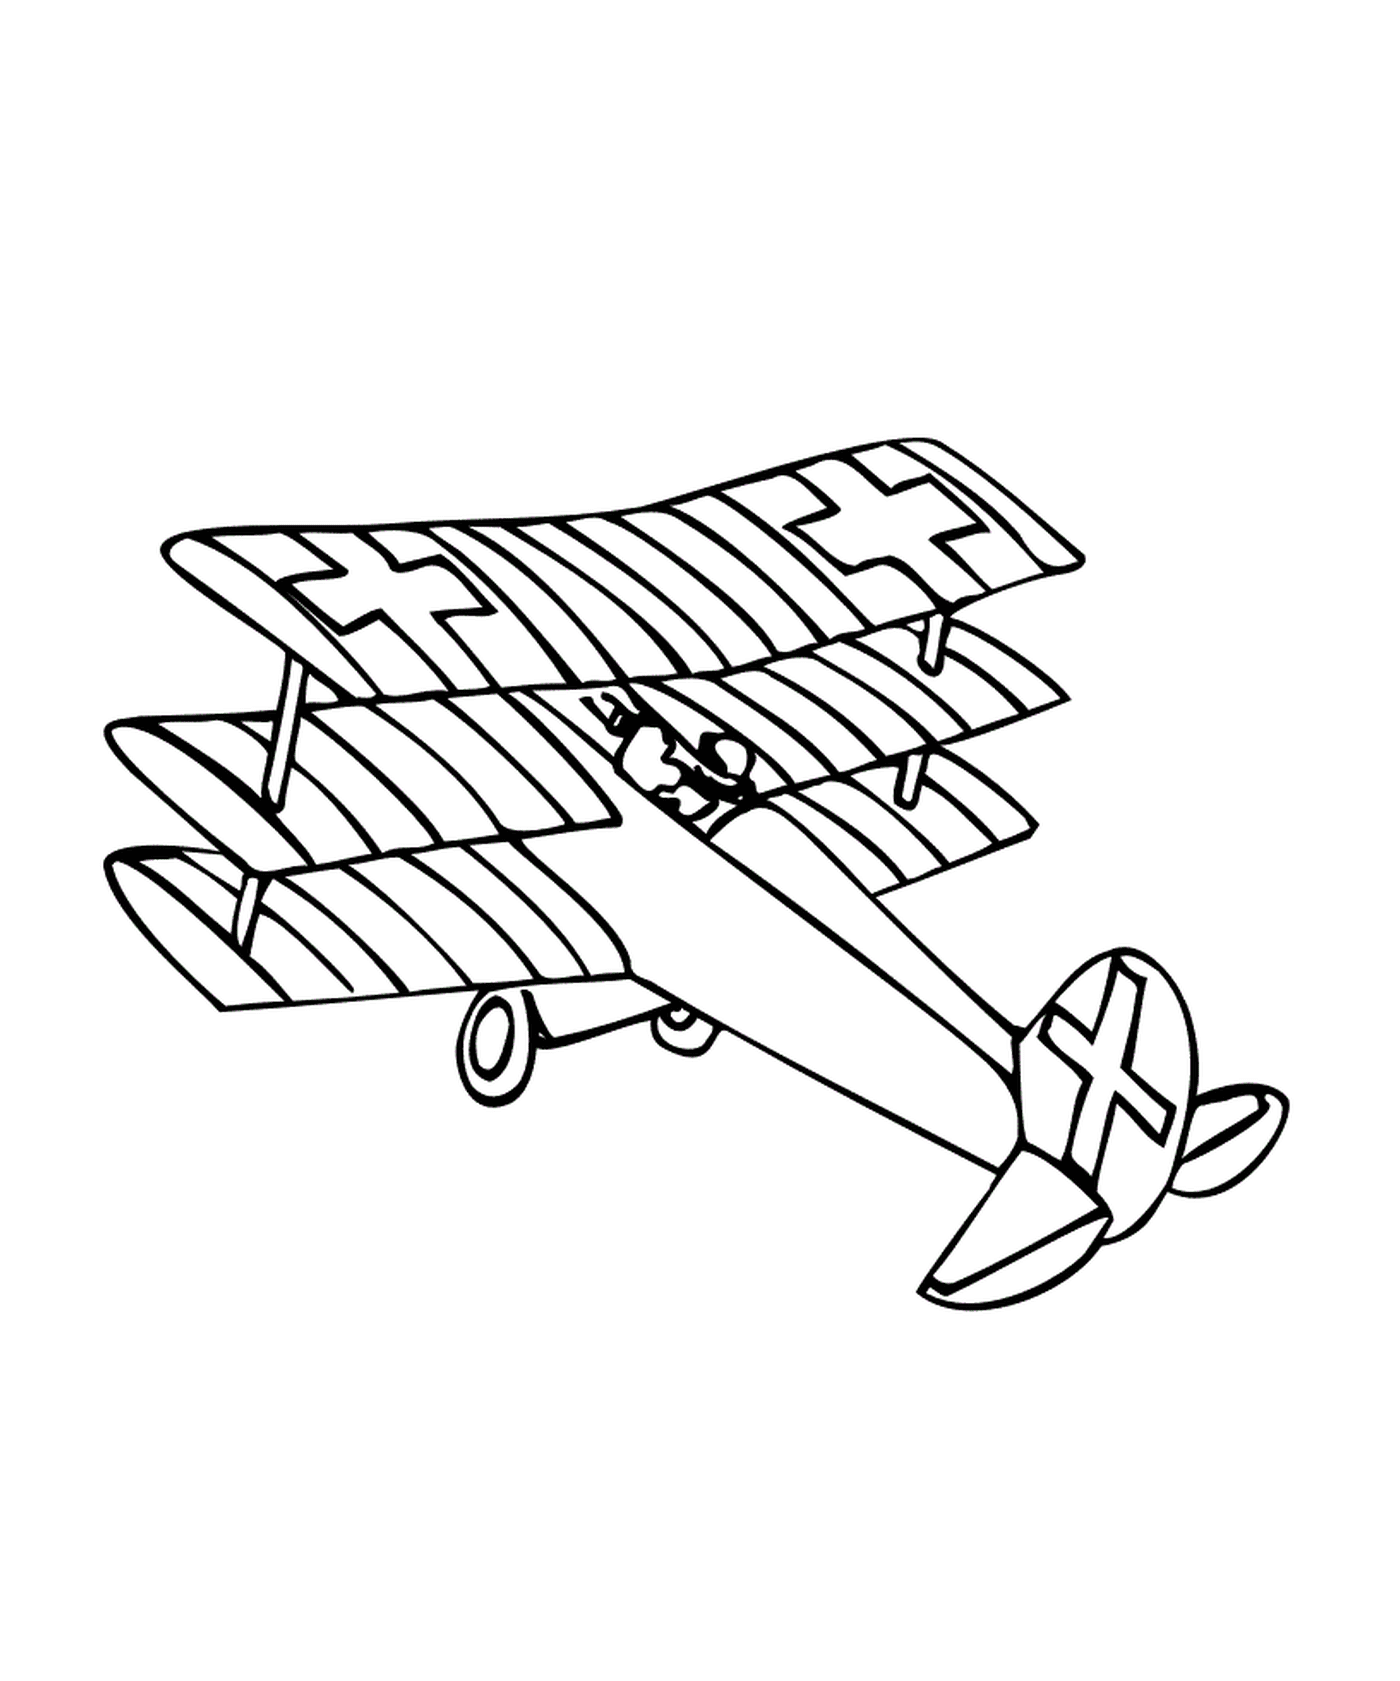   Un avion est dessiné 